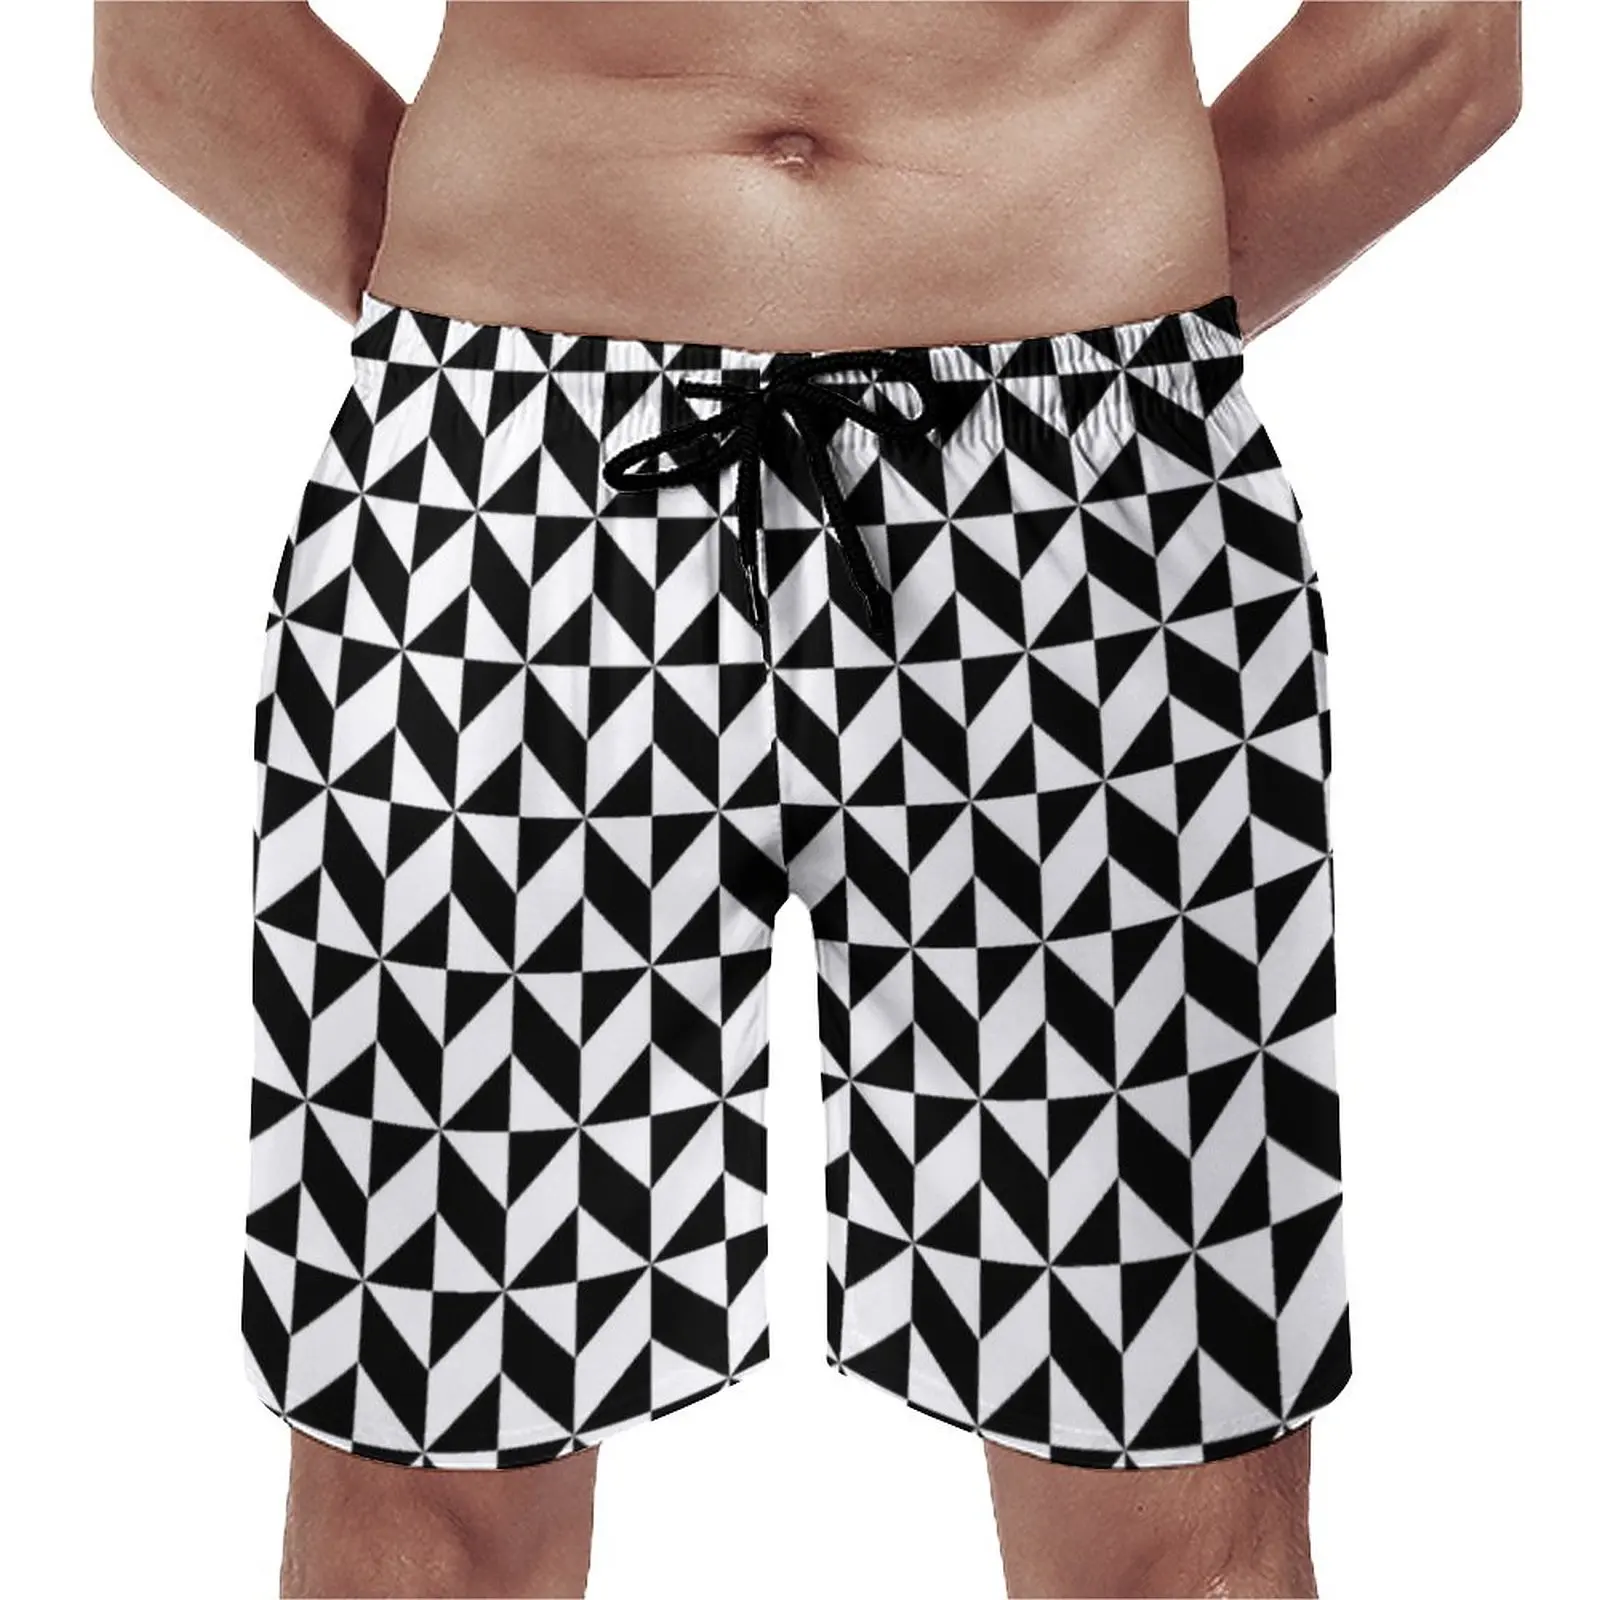 

Шорты пляжные мужские быстросохнущие, повседневные короткие штаны с абстрактным геометрическим рисунком, Летние плавки для серфинга, черно-белые